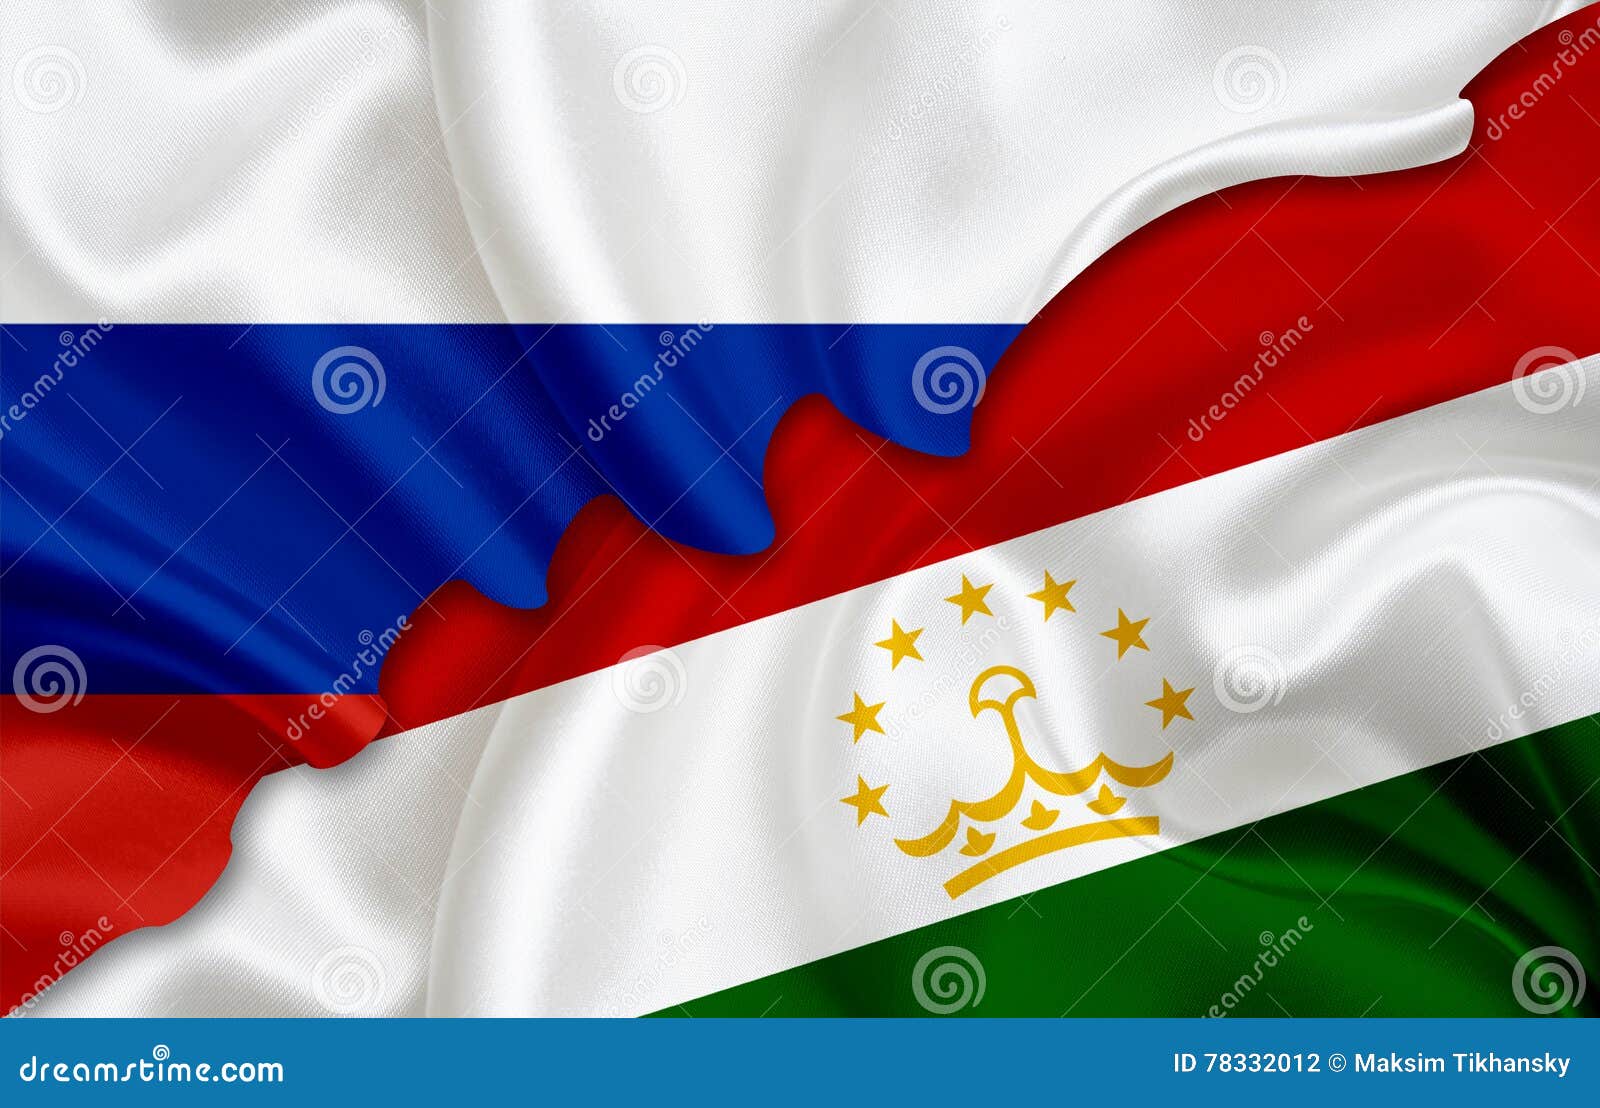 Флаг Таджикистана Фото Скачать